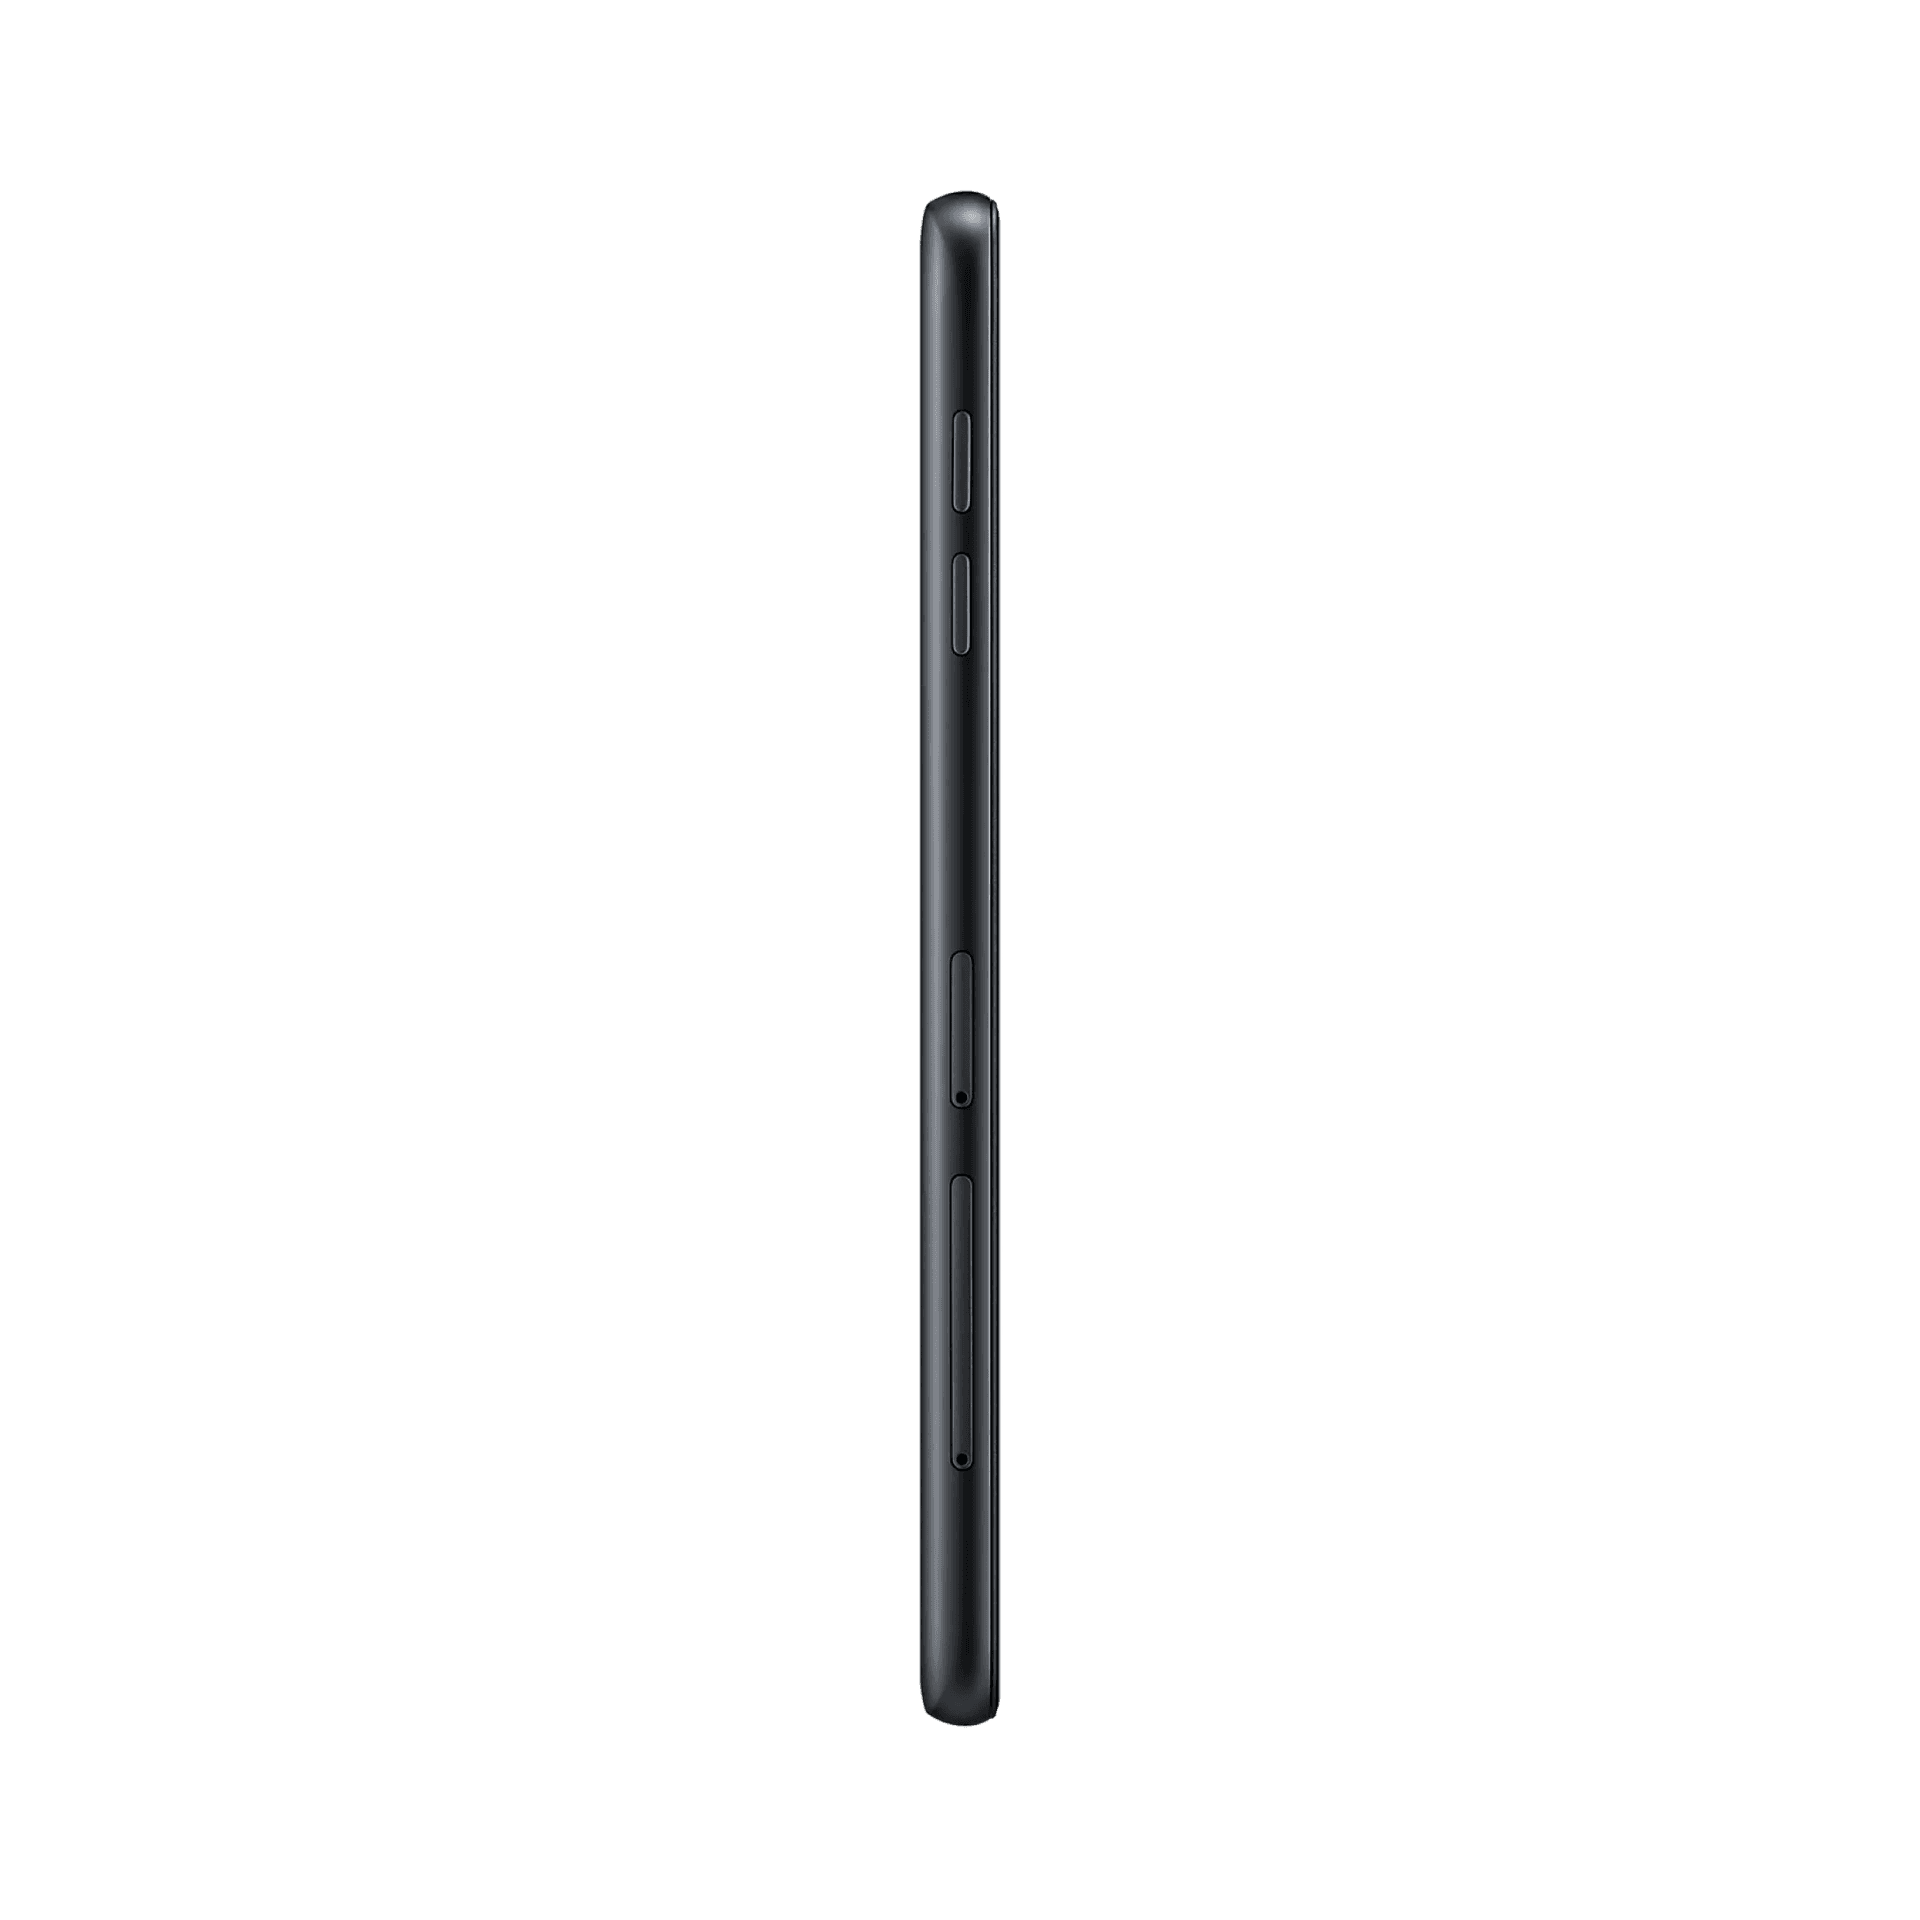 Samsung Galaxy J7 Pro - 16 GB - Siyah